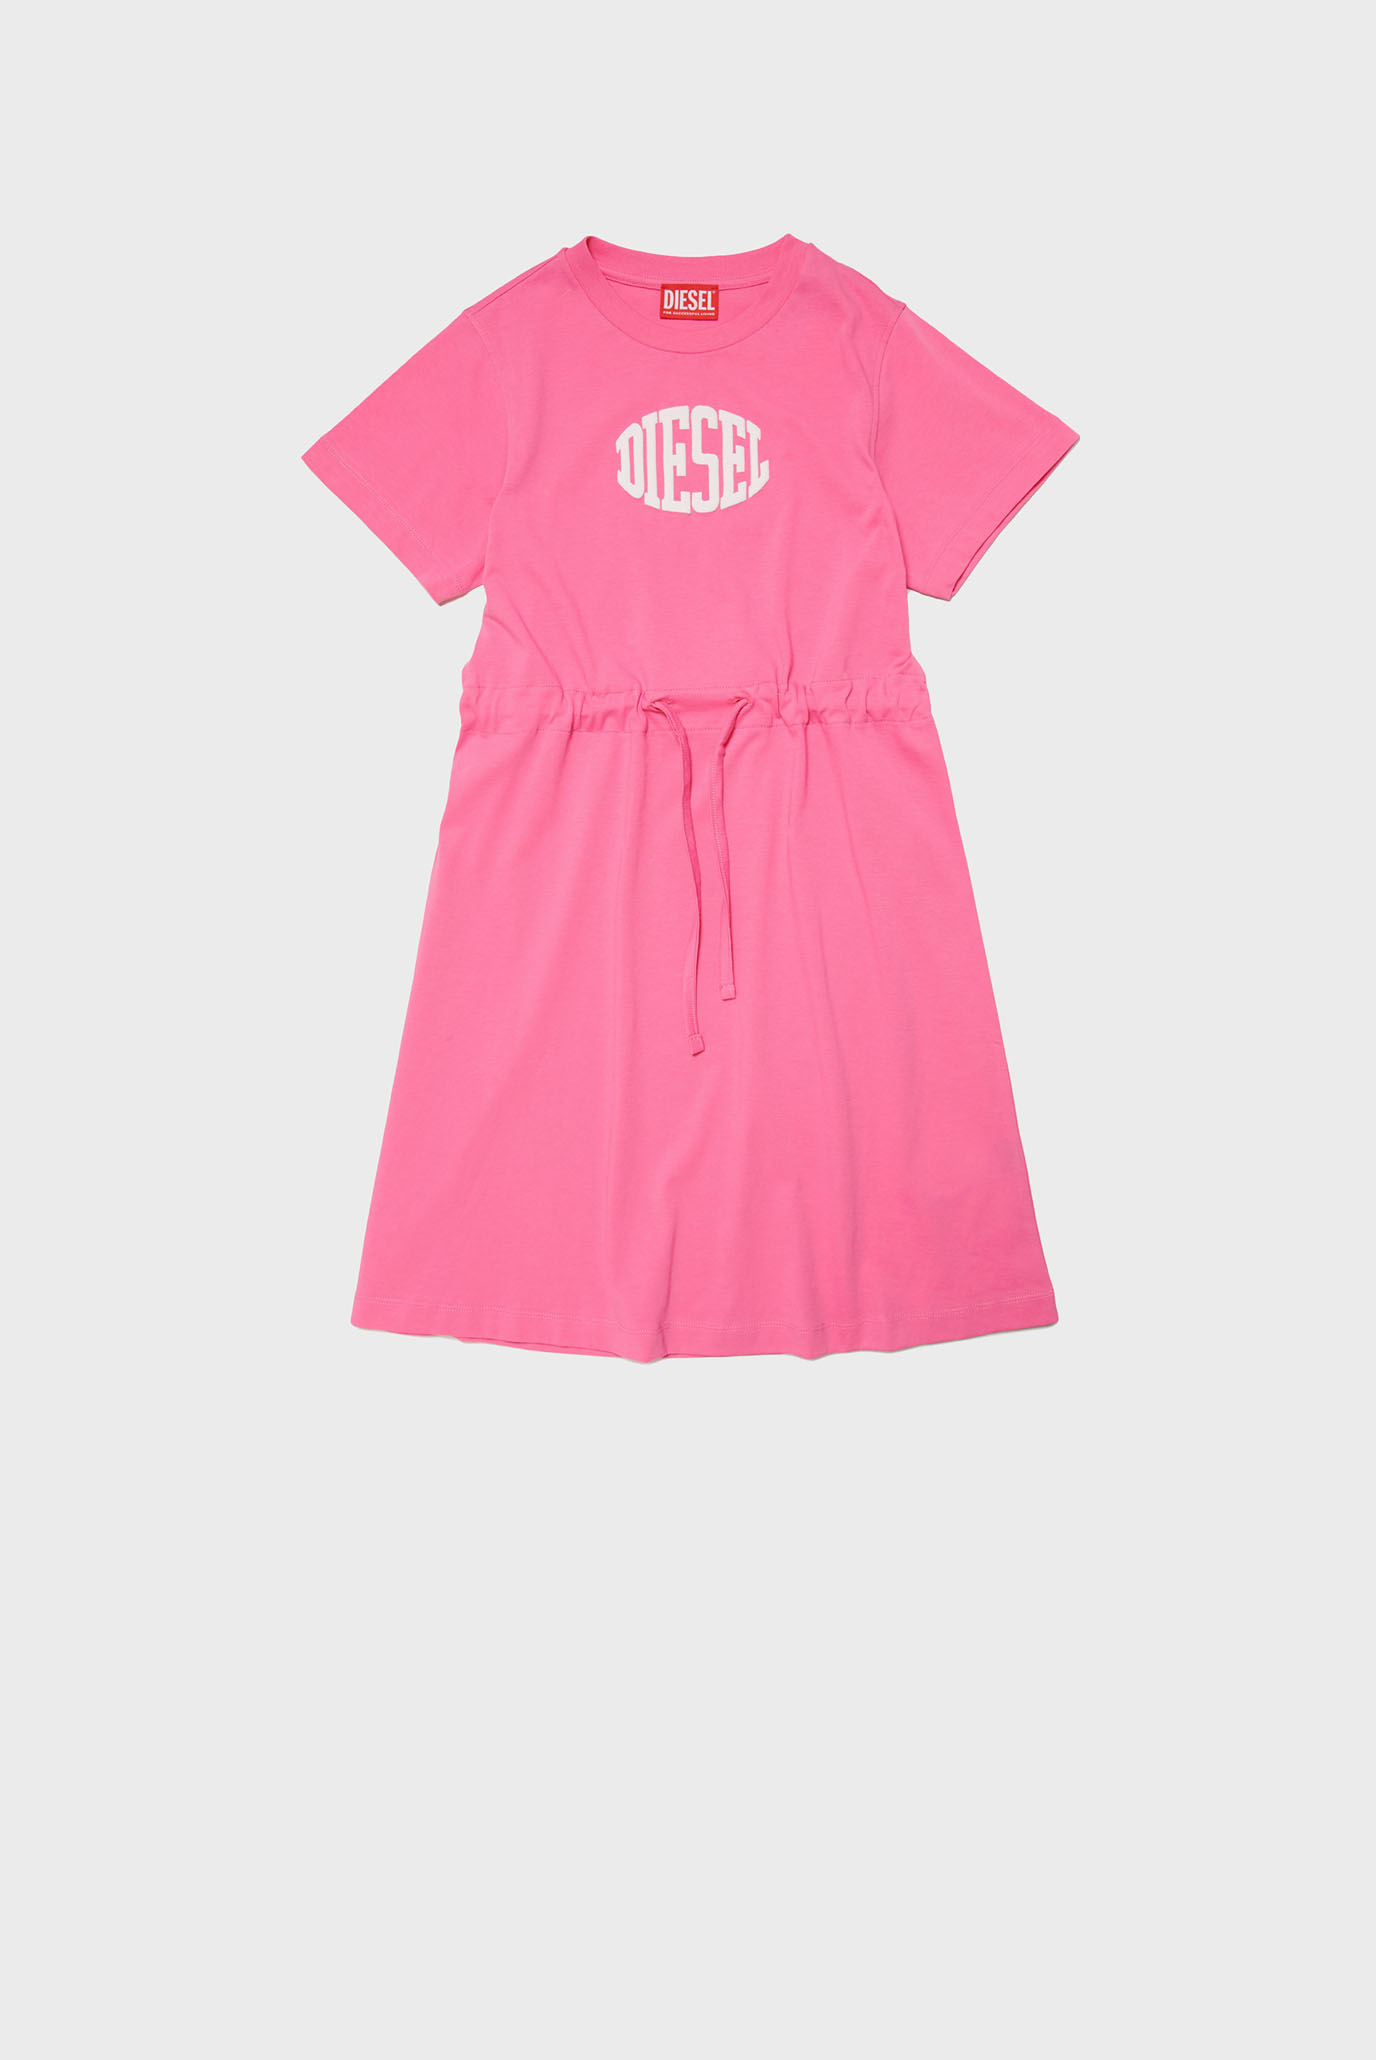 Дитяча рожева сукня DEMPYJE 1